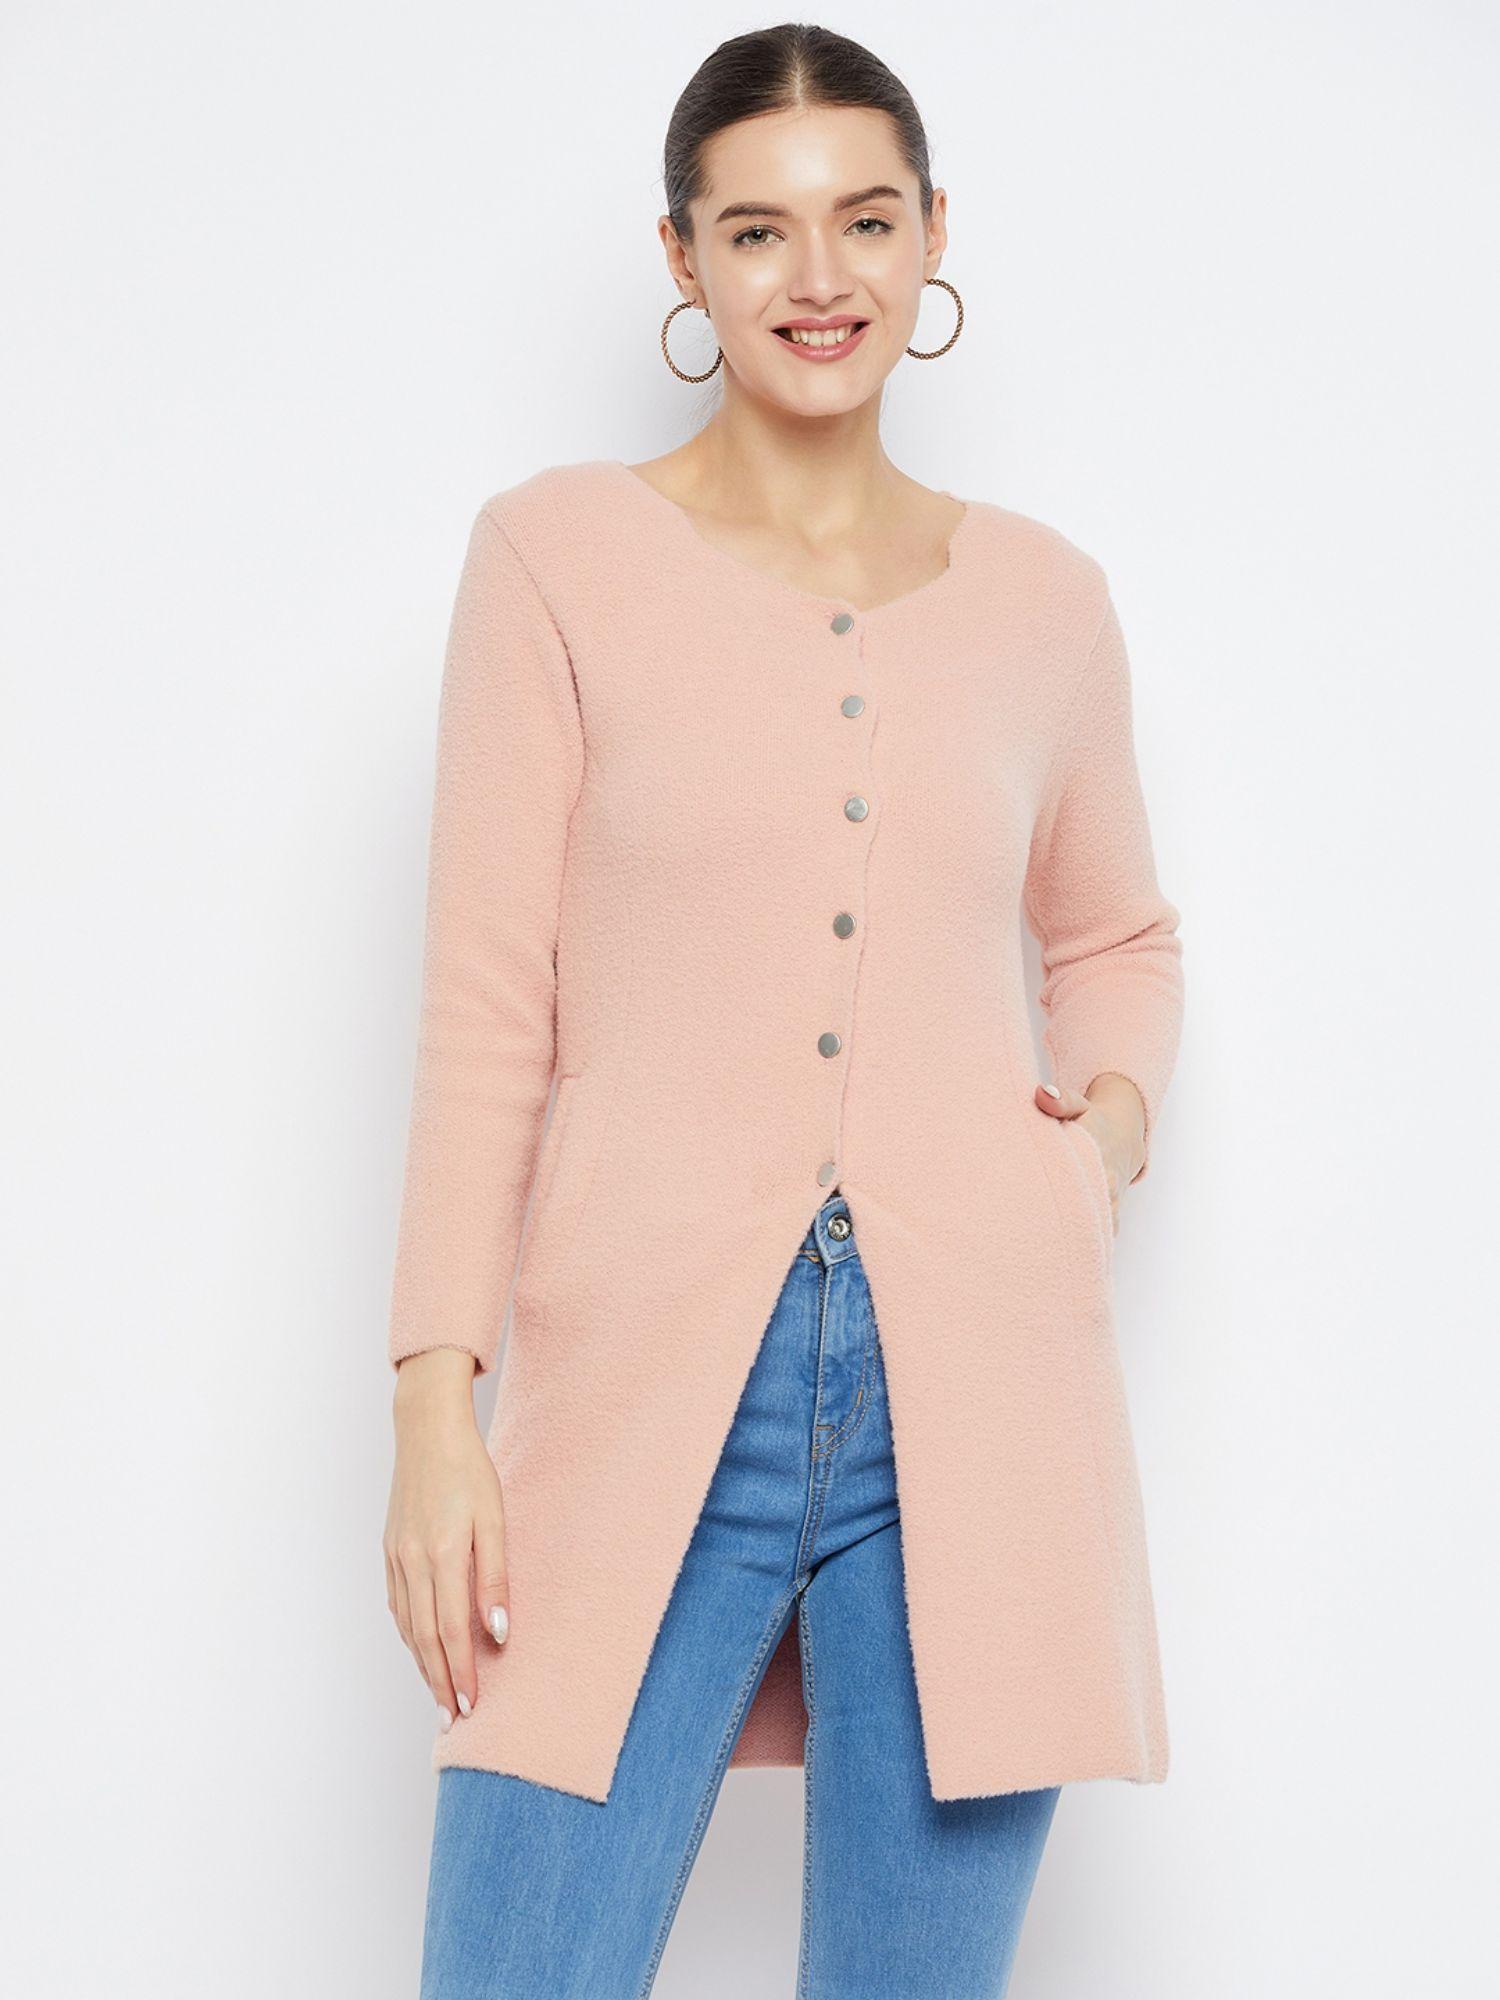 women-winterwear-solid-peach-long-line-woollen-cardigan